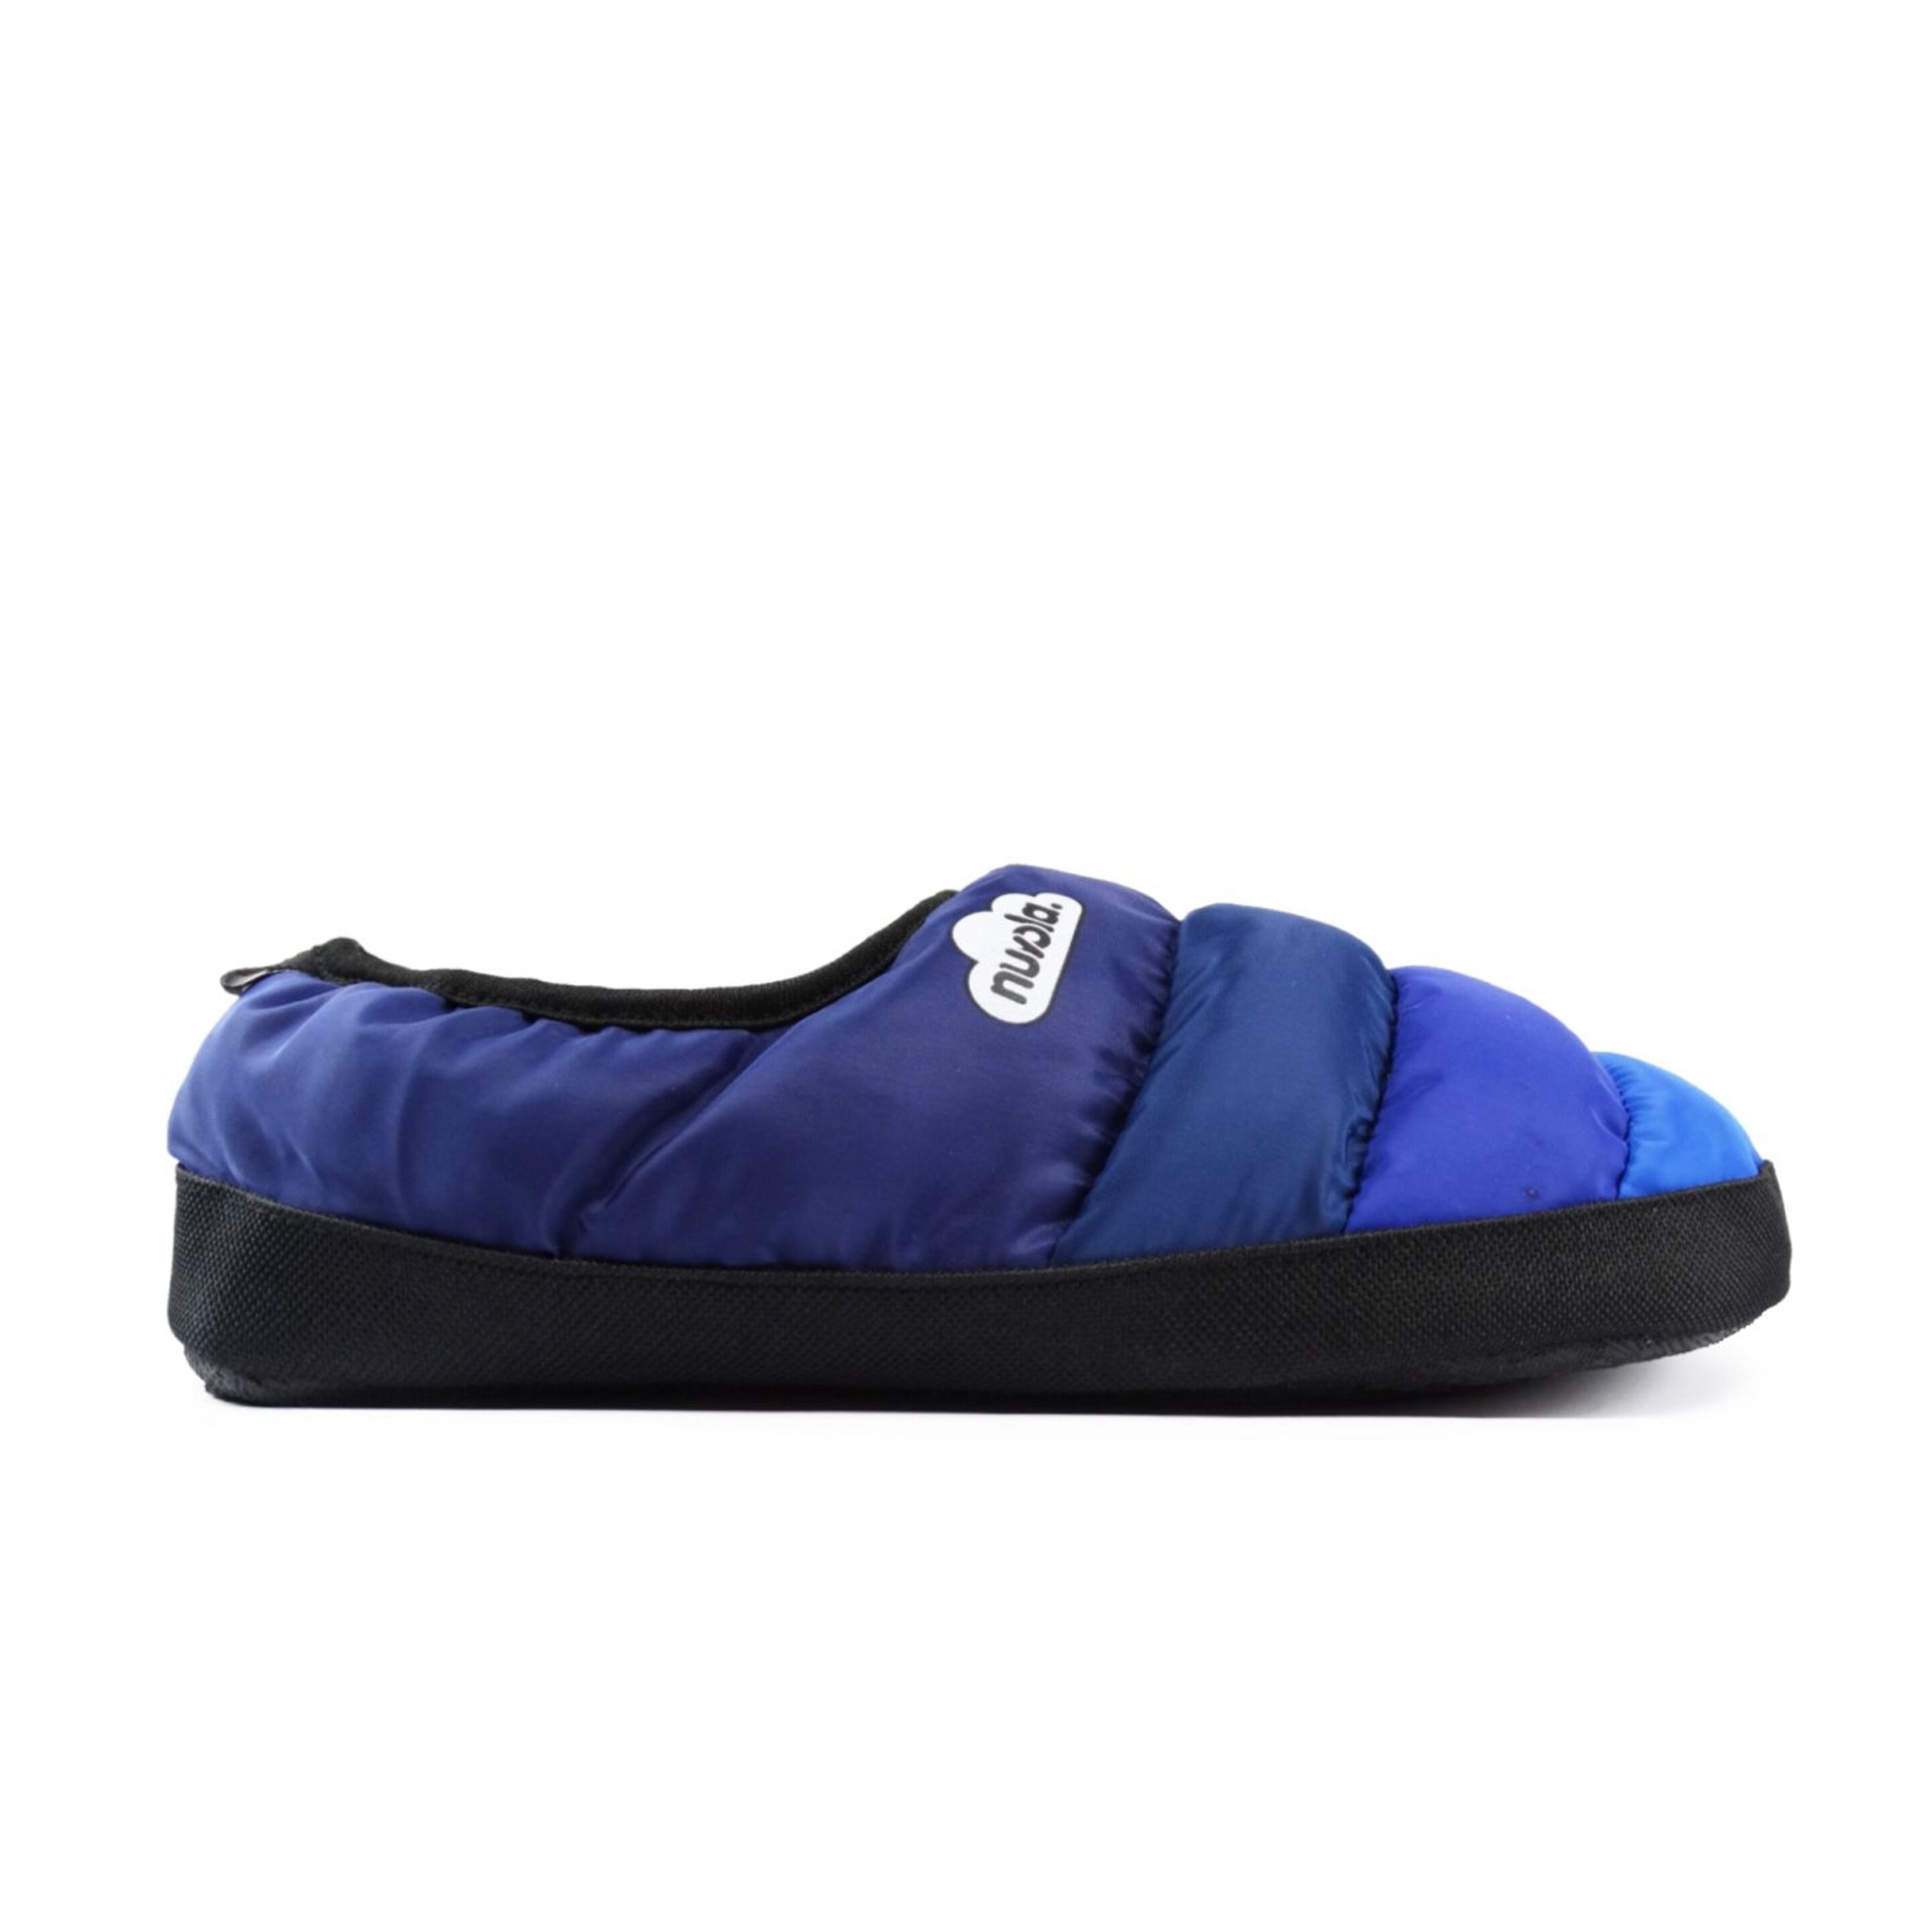 Zapatillas De Casa / Camping Nuvola Clásica Colors - Azul - Pantuflas  MKP